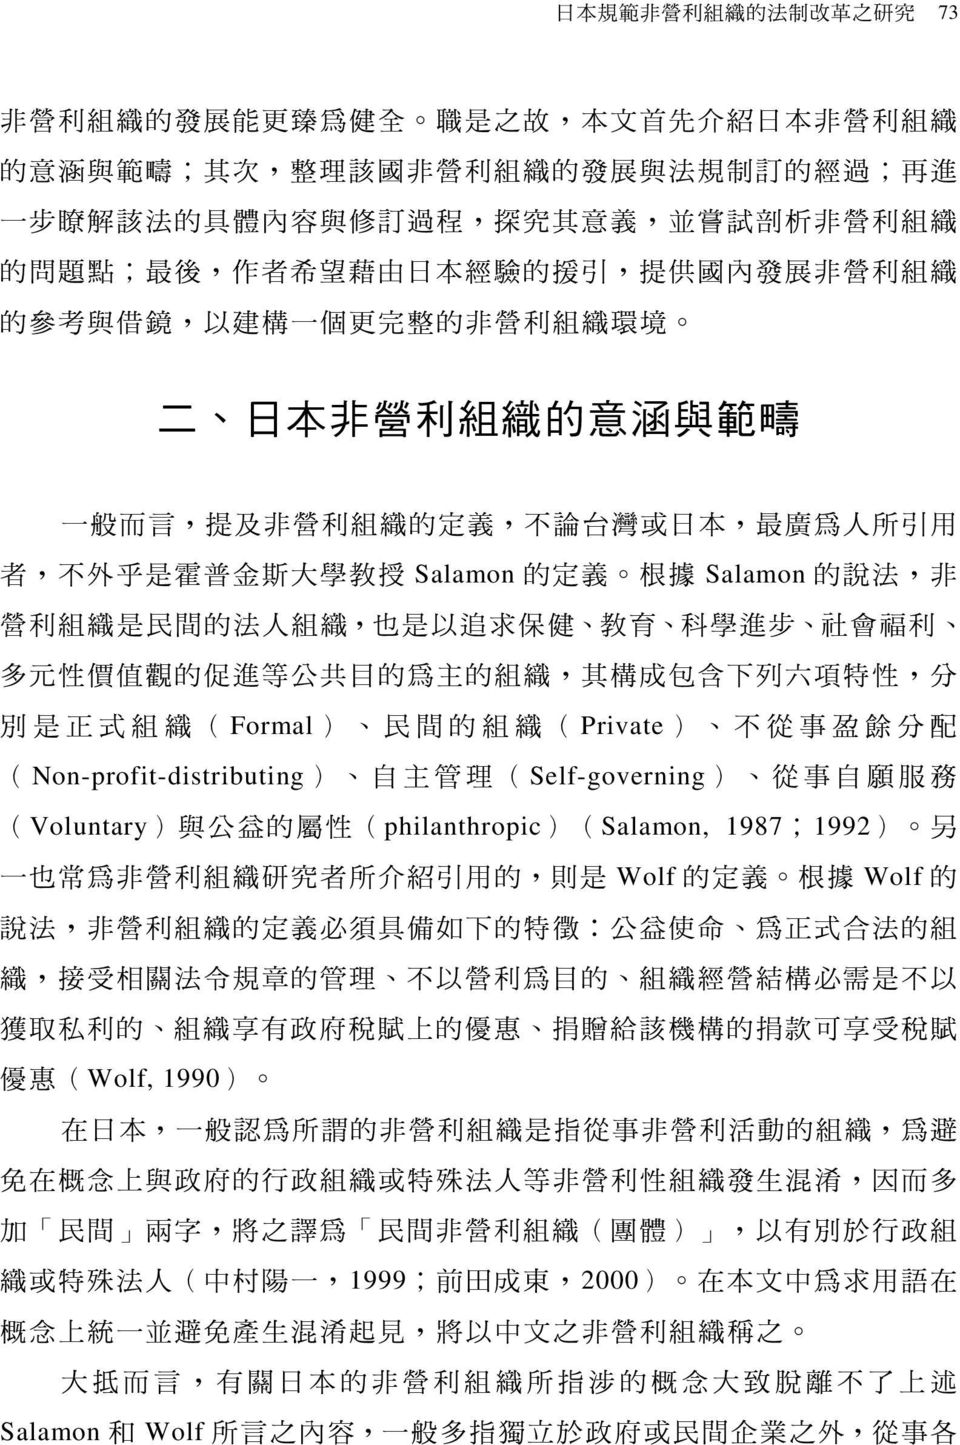 台 灣 或 日 本, 最 廣 為 人 所 引 用 者, 不 外 乎 是 霍 普 金 斯 大 學 教 授 Salamon 的 定 義 根 據 Salamon 的 說 法, 非 營 利 組 織 是 民 間 的 法 人 組 織, 也 是 以 追 求 保 健 教 育 科 學 進 步 社 會 福 利 多 元 性 價 值 觀 的 促 進 等 公 共 目 的 為 主 的 組 織, 其 構 成 包 含 下 列